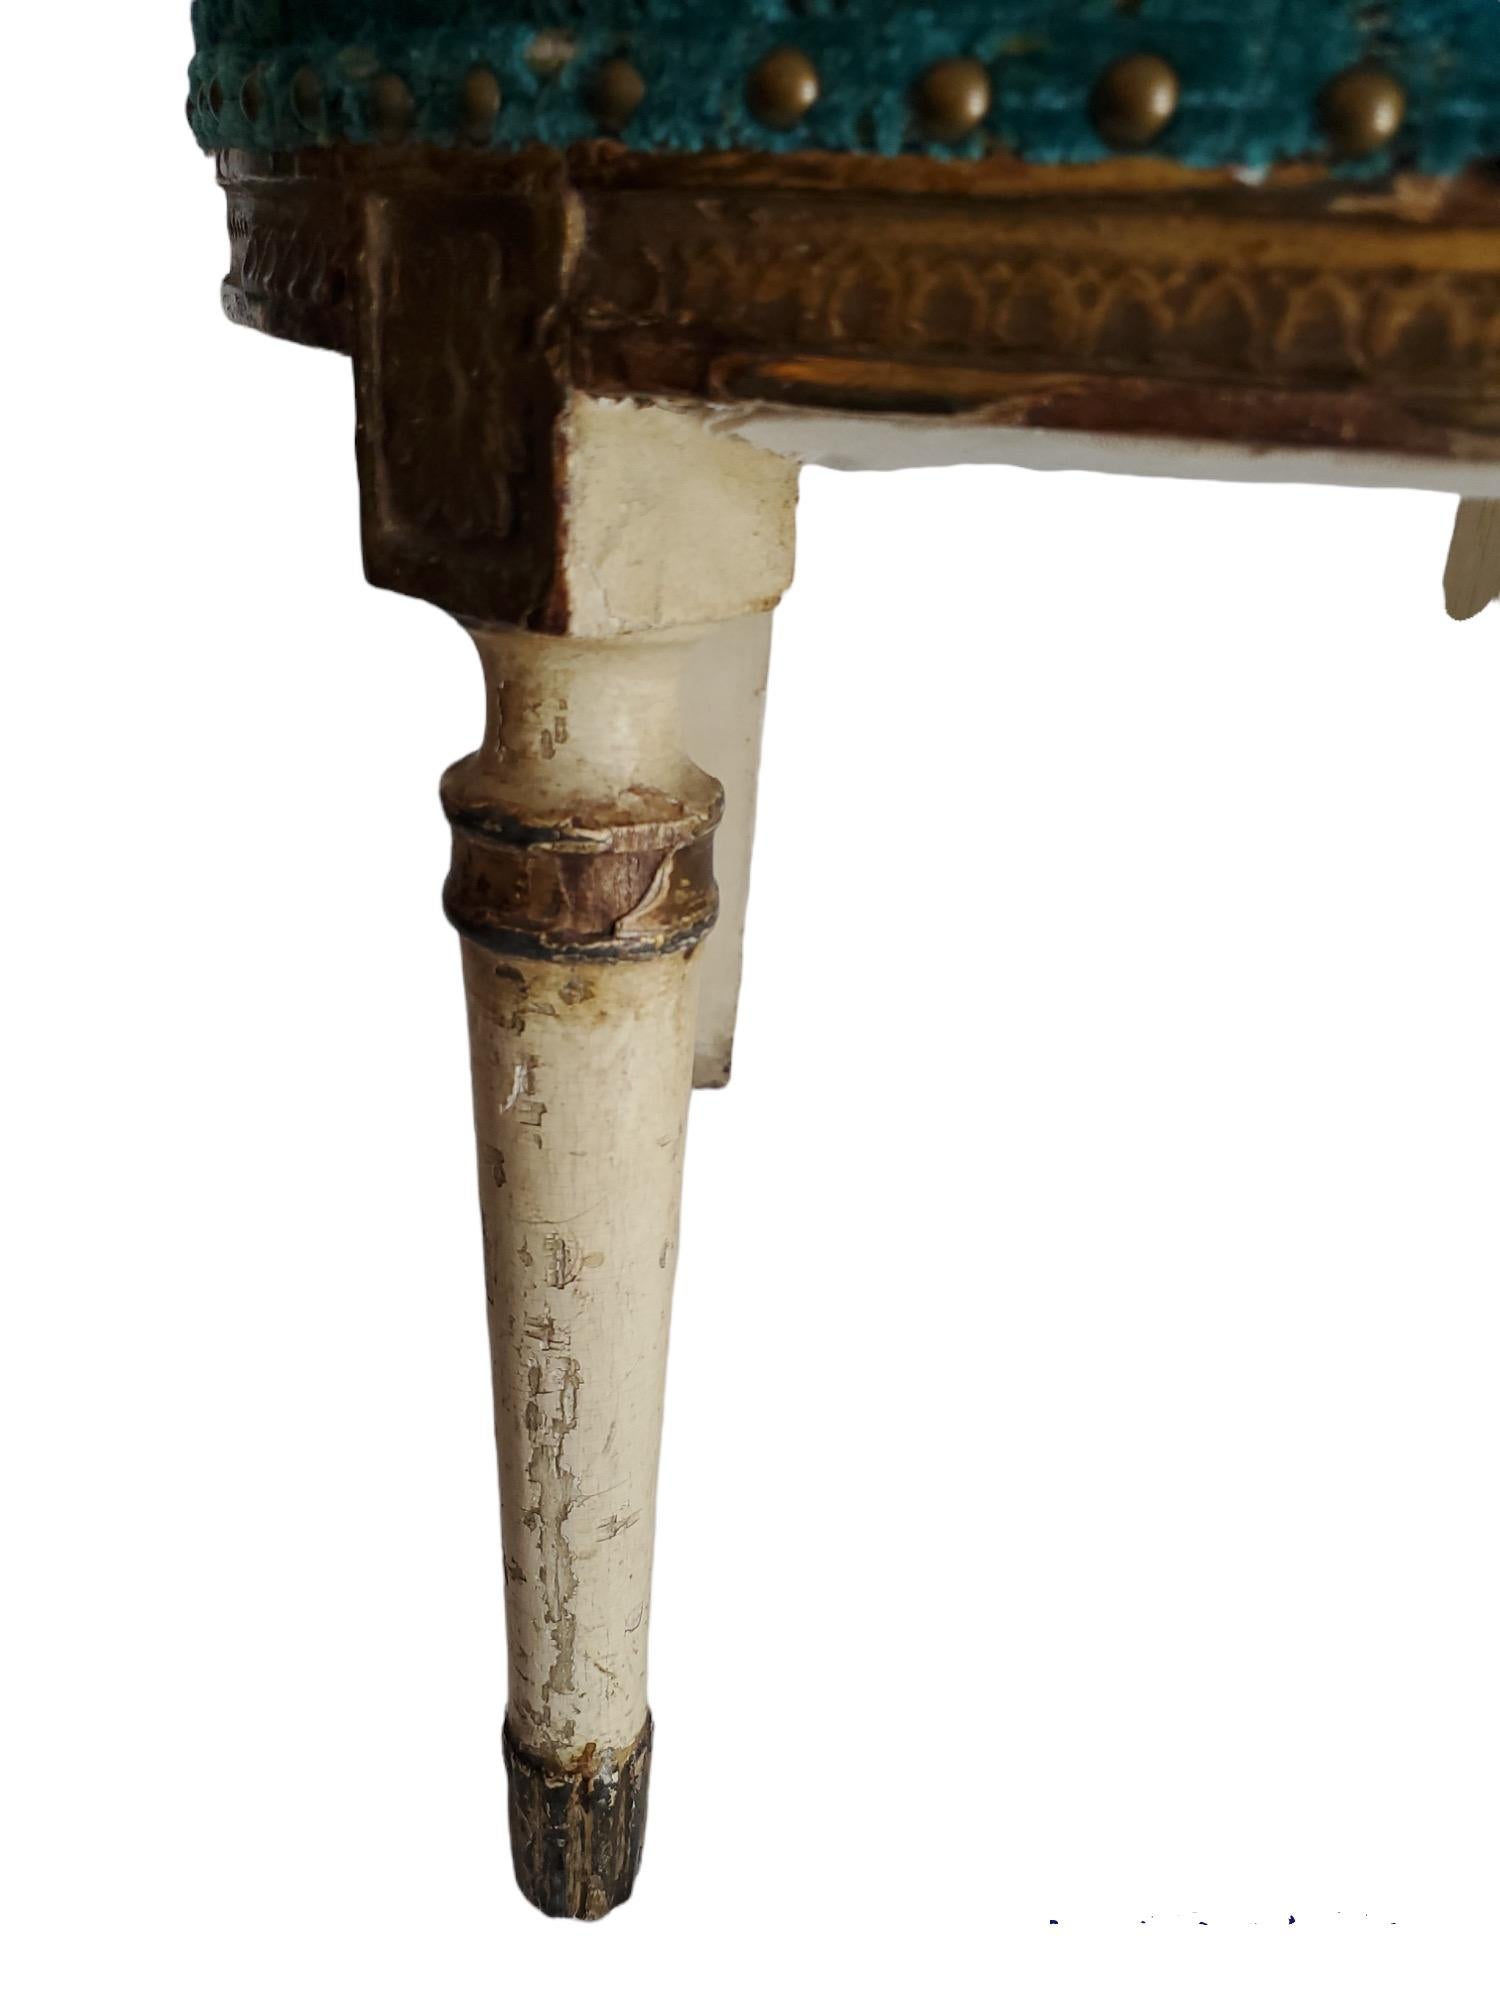 Bemalte italienische Beistellstühle des frühen 19. Jahrhunderts.  Neu gepolstert mit aquamarinfarbenem Samt.  Blumengirlande und Urnenmotiv.